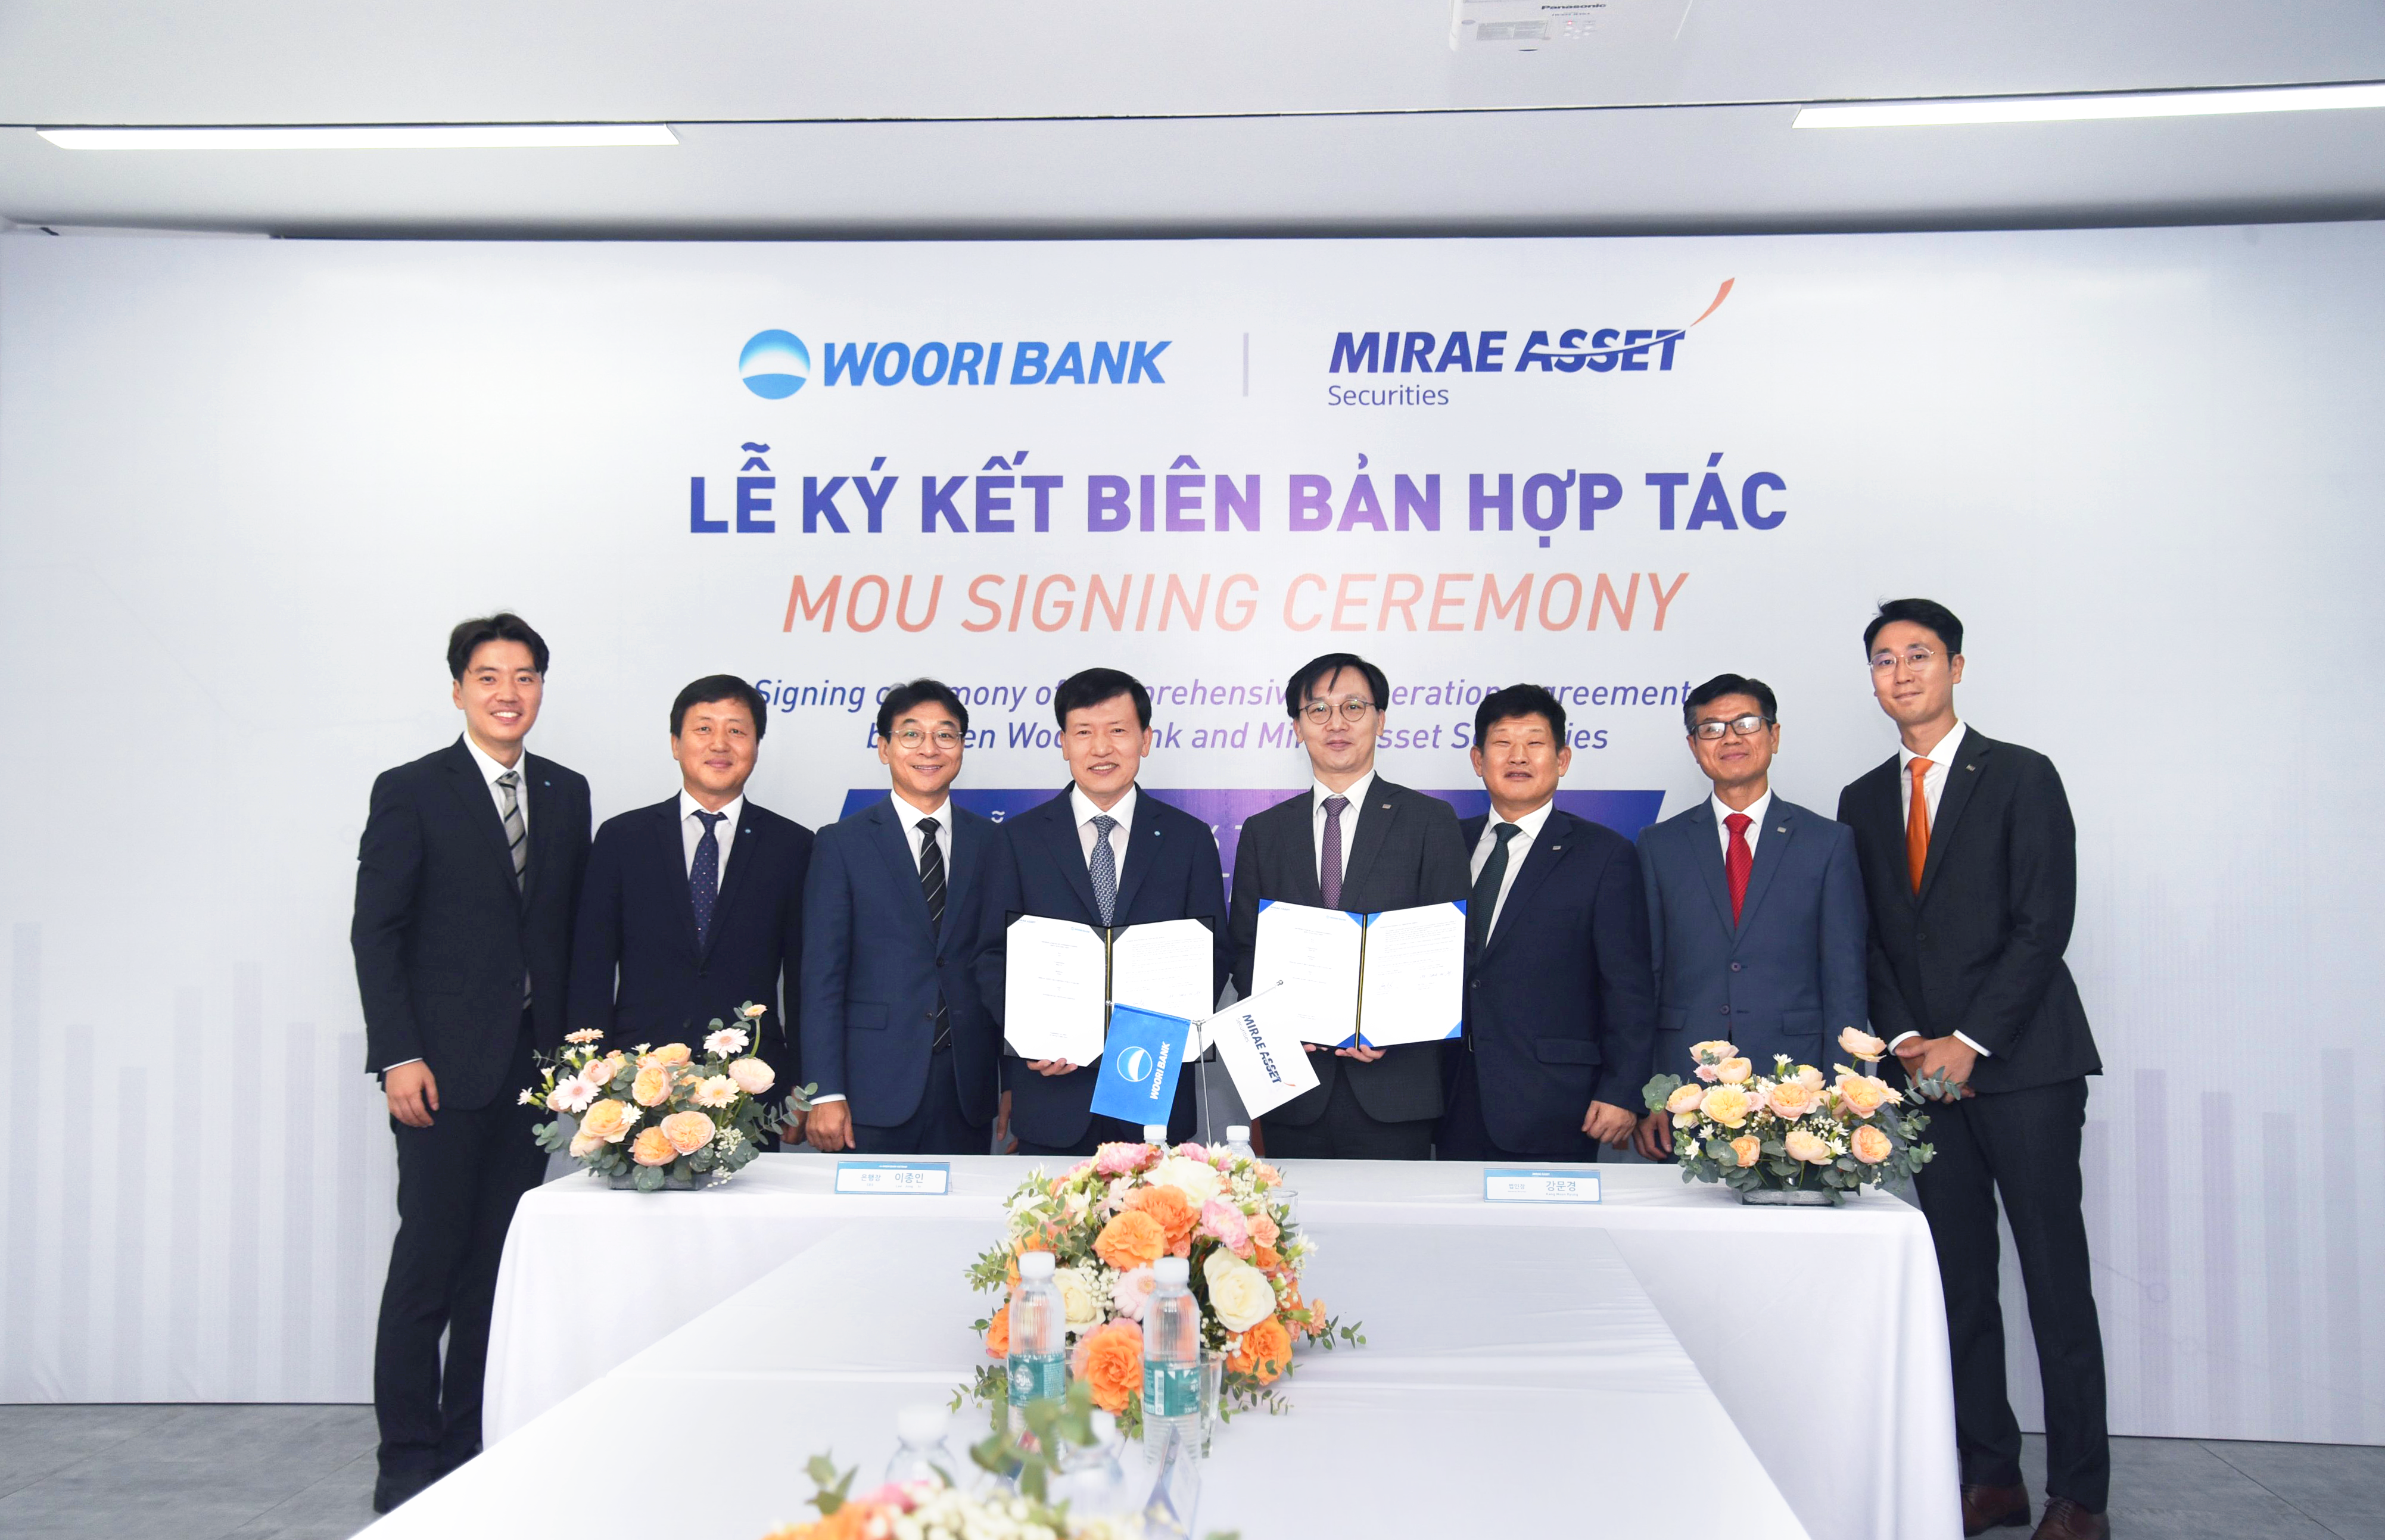 Mirae Asset Việt Nam ký thoả thuận hợp tác với Woori Bank